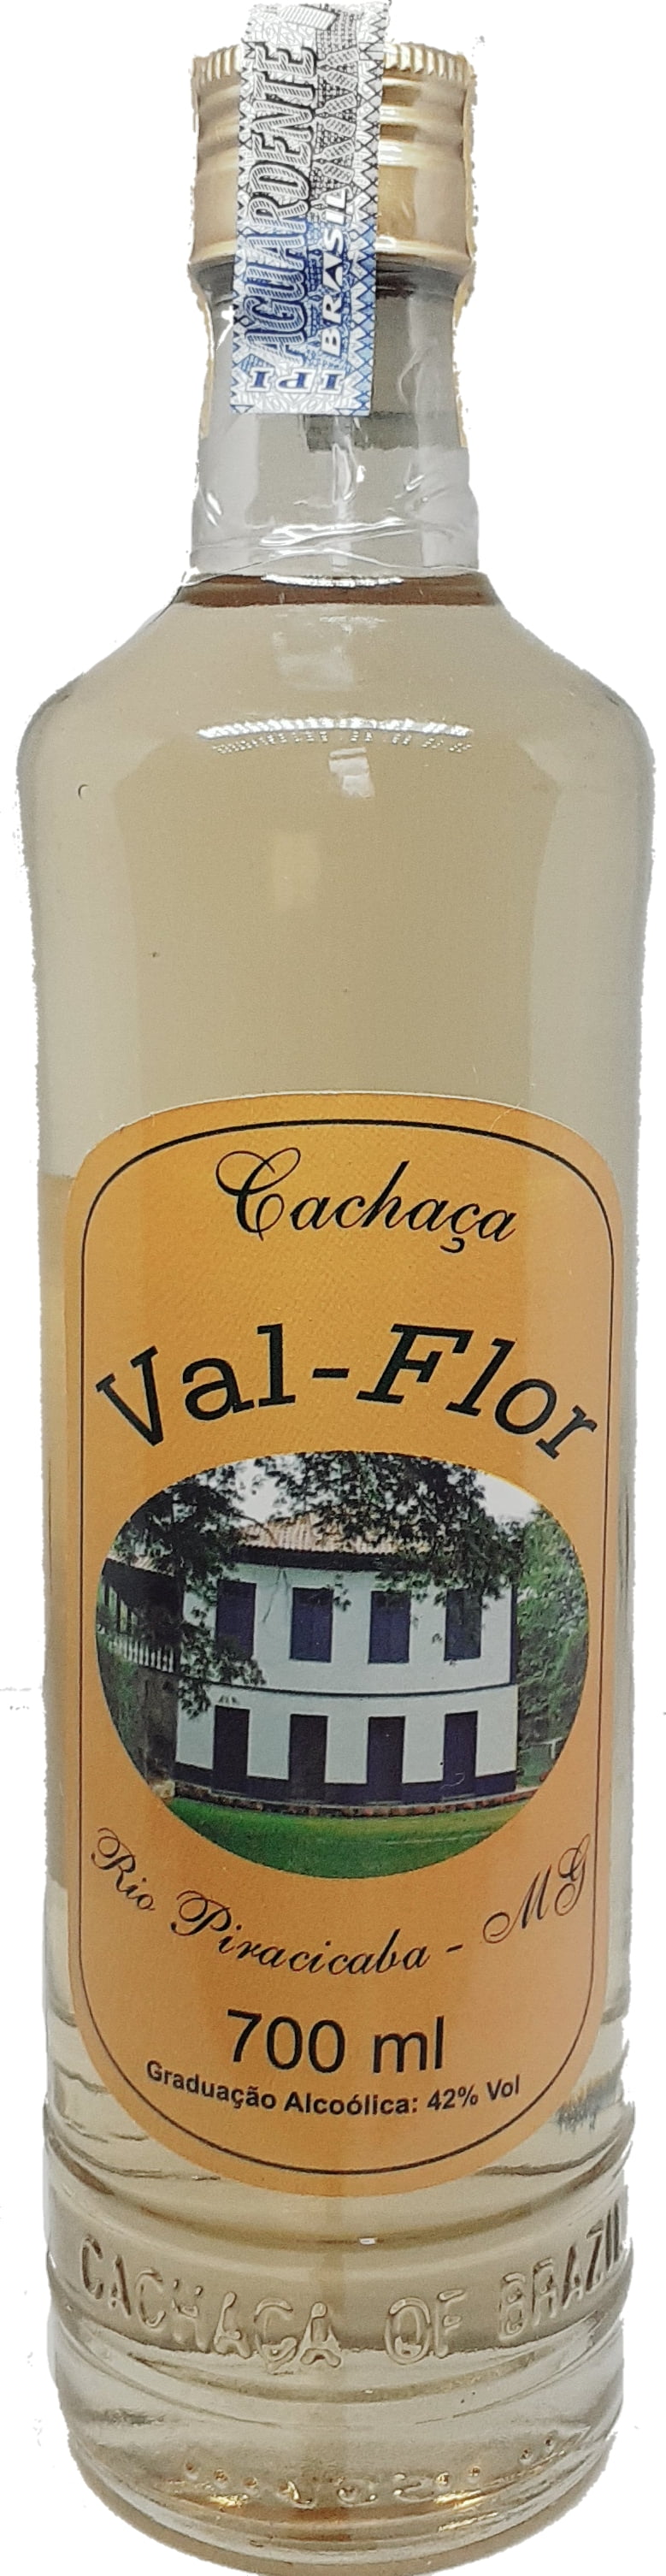 Cachaça Val Flor Ouro 700 ml - Jequitibá e Carvalho